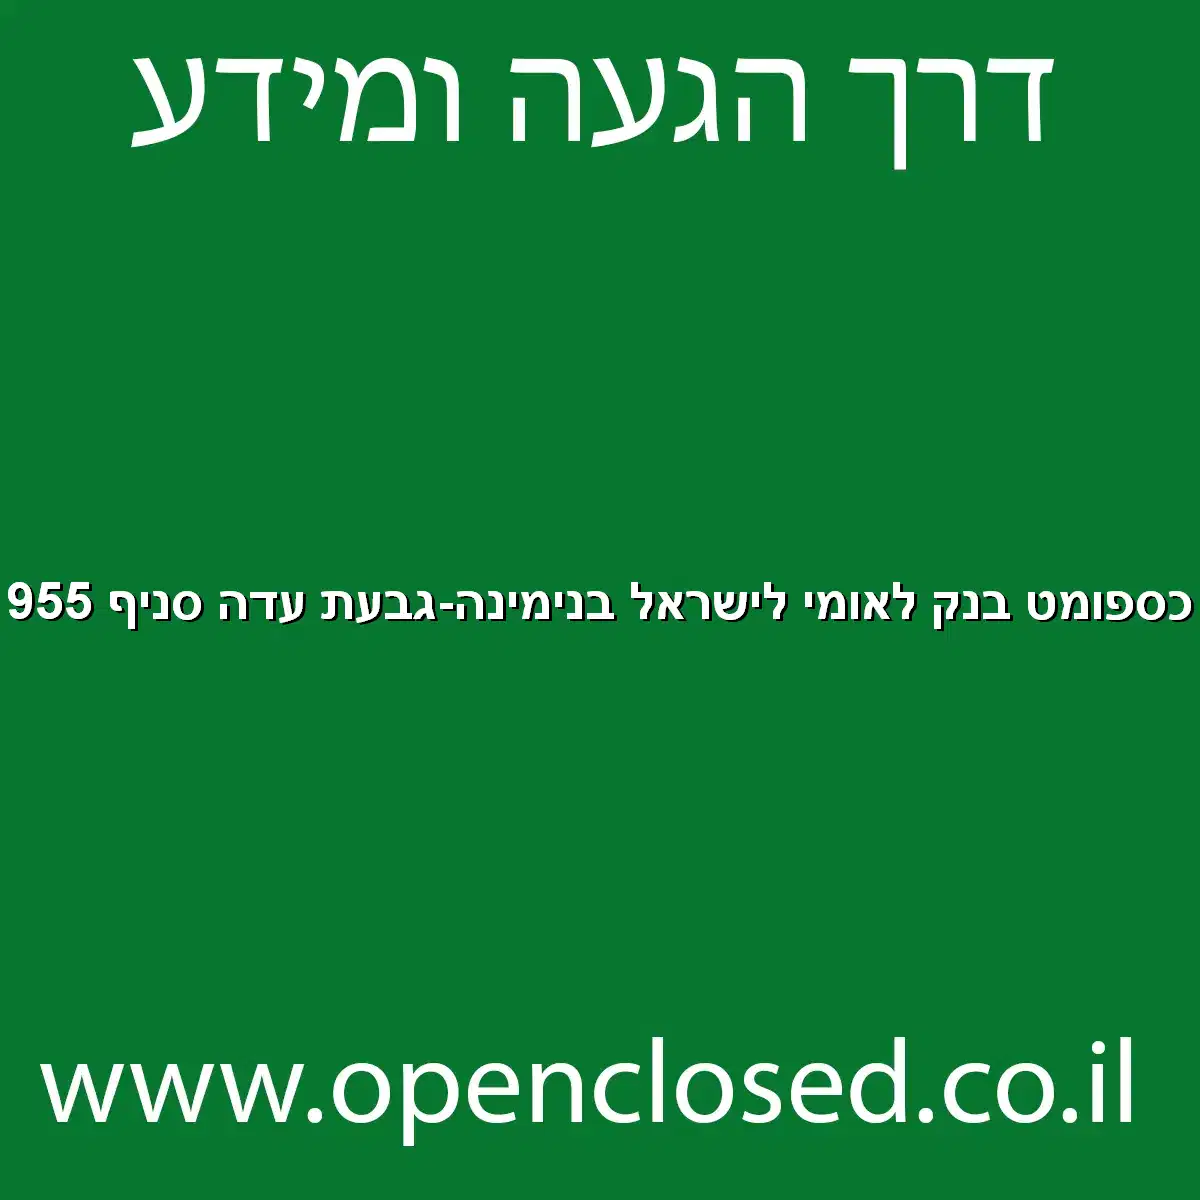 כספומט בנק לאומי לישראל בנימינה-גבעת עדה סניף 955